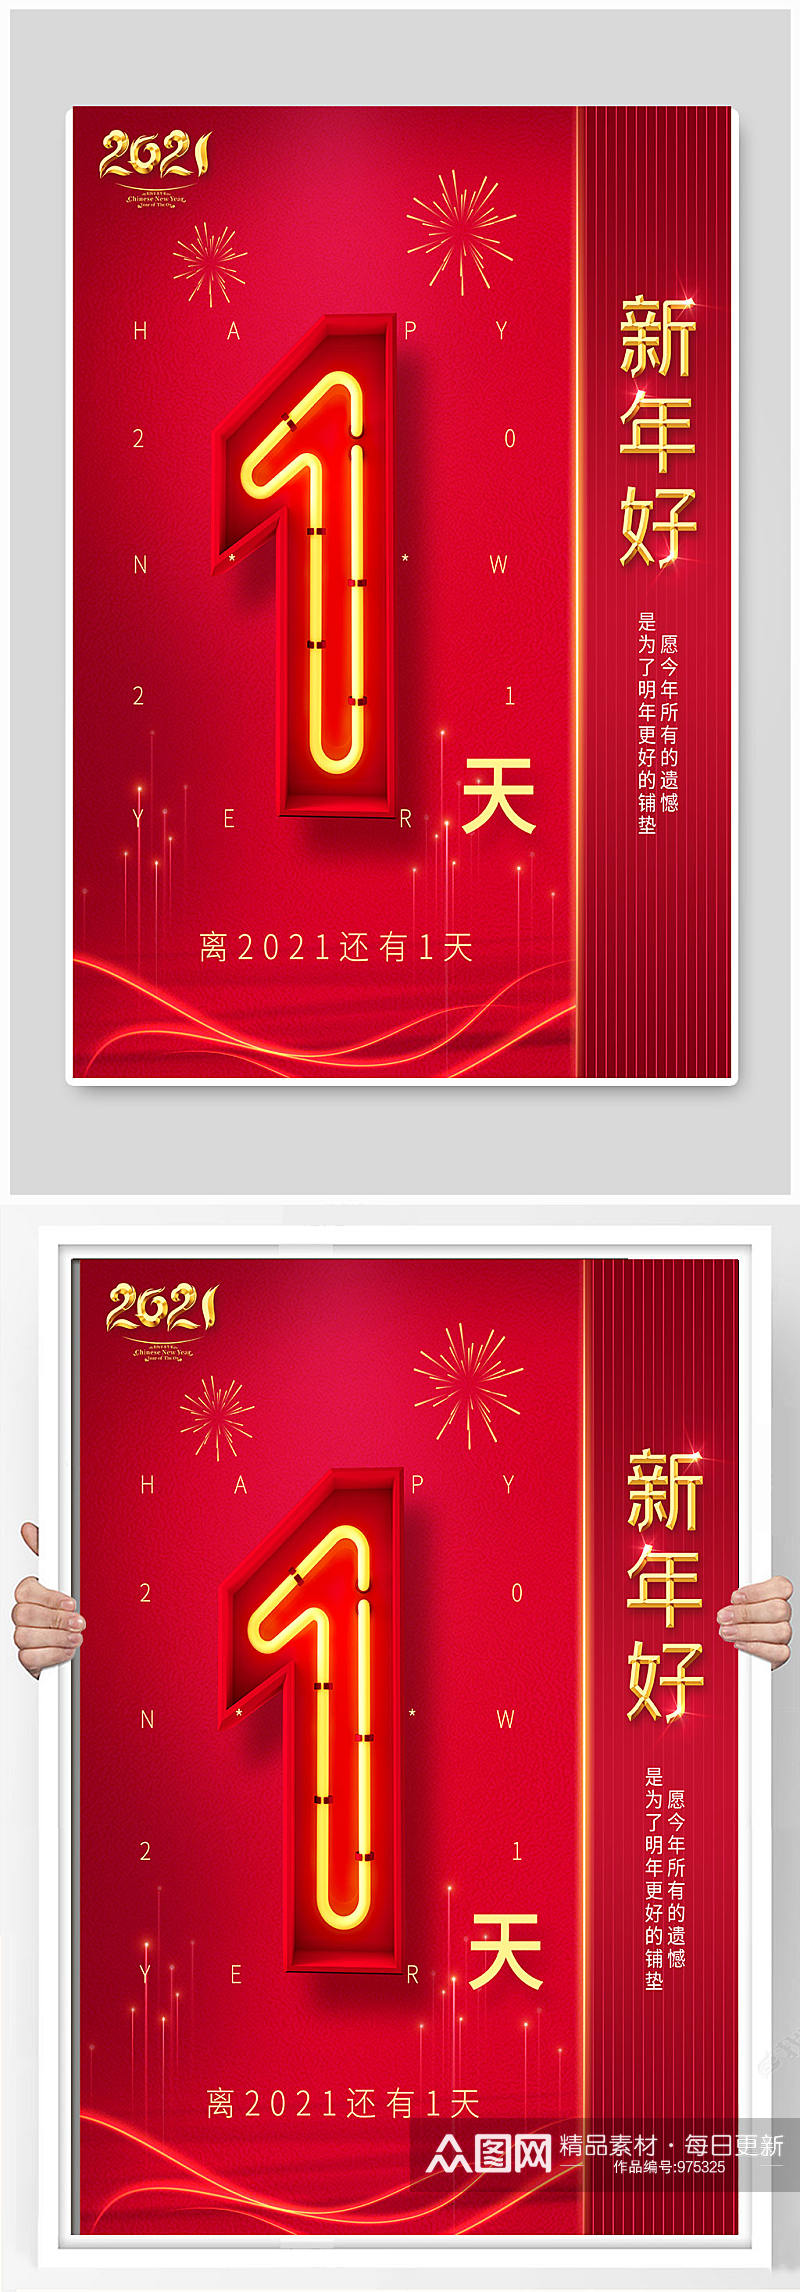 2021新年元旦节红色大气创意倒计时海报素材